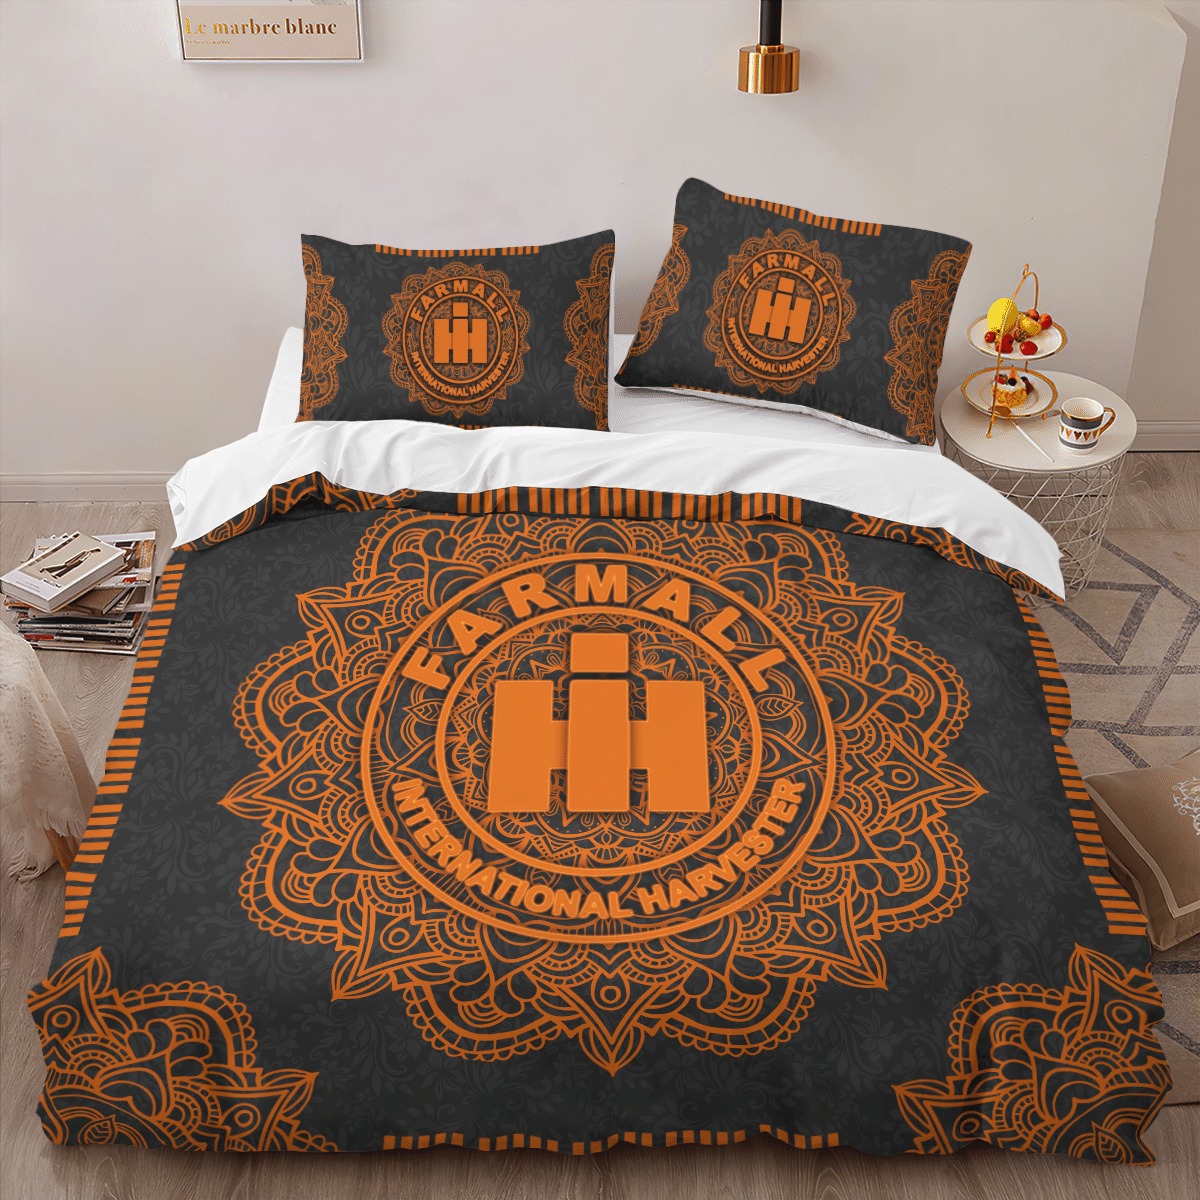 Farmall International Harvester IH Mandala quilt bedding set 14